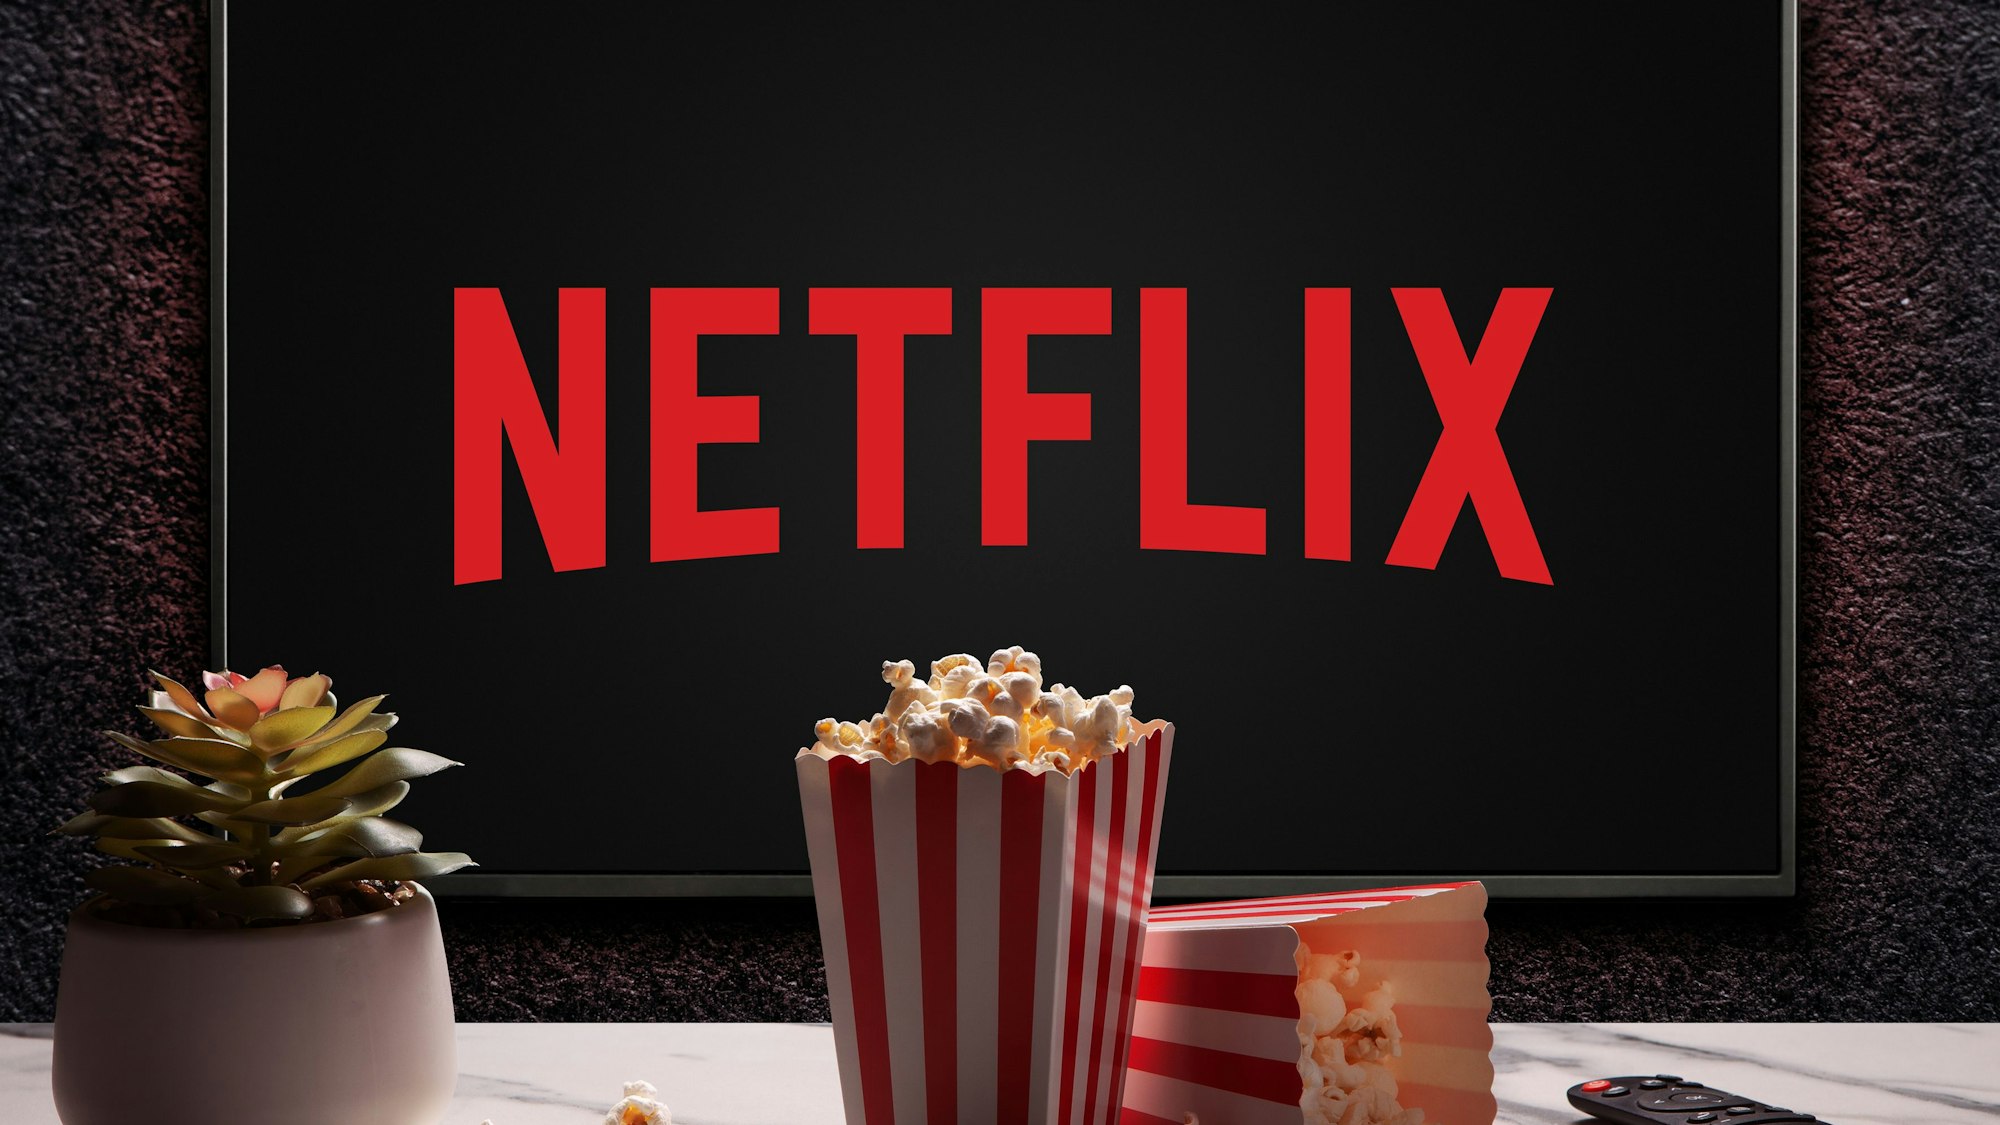 Hier zu sehen: Ein Bildschirm mit dem roten Logo von Netflix hängt an einer Wand. Im Vordergrund sind zwei Tüten Popcorn, eine Fernbedienung und eine Pflanze zu sehen.